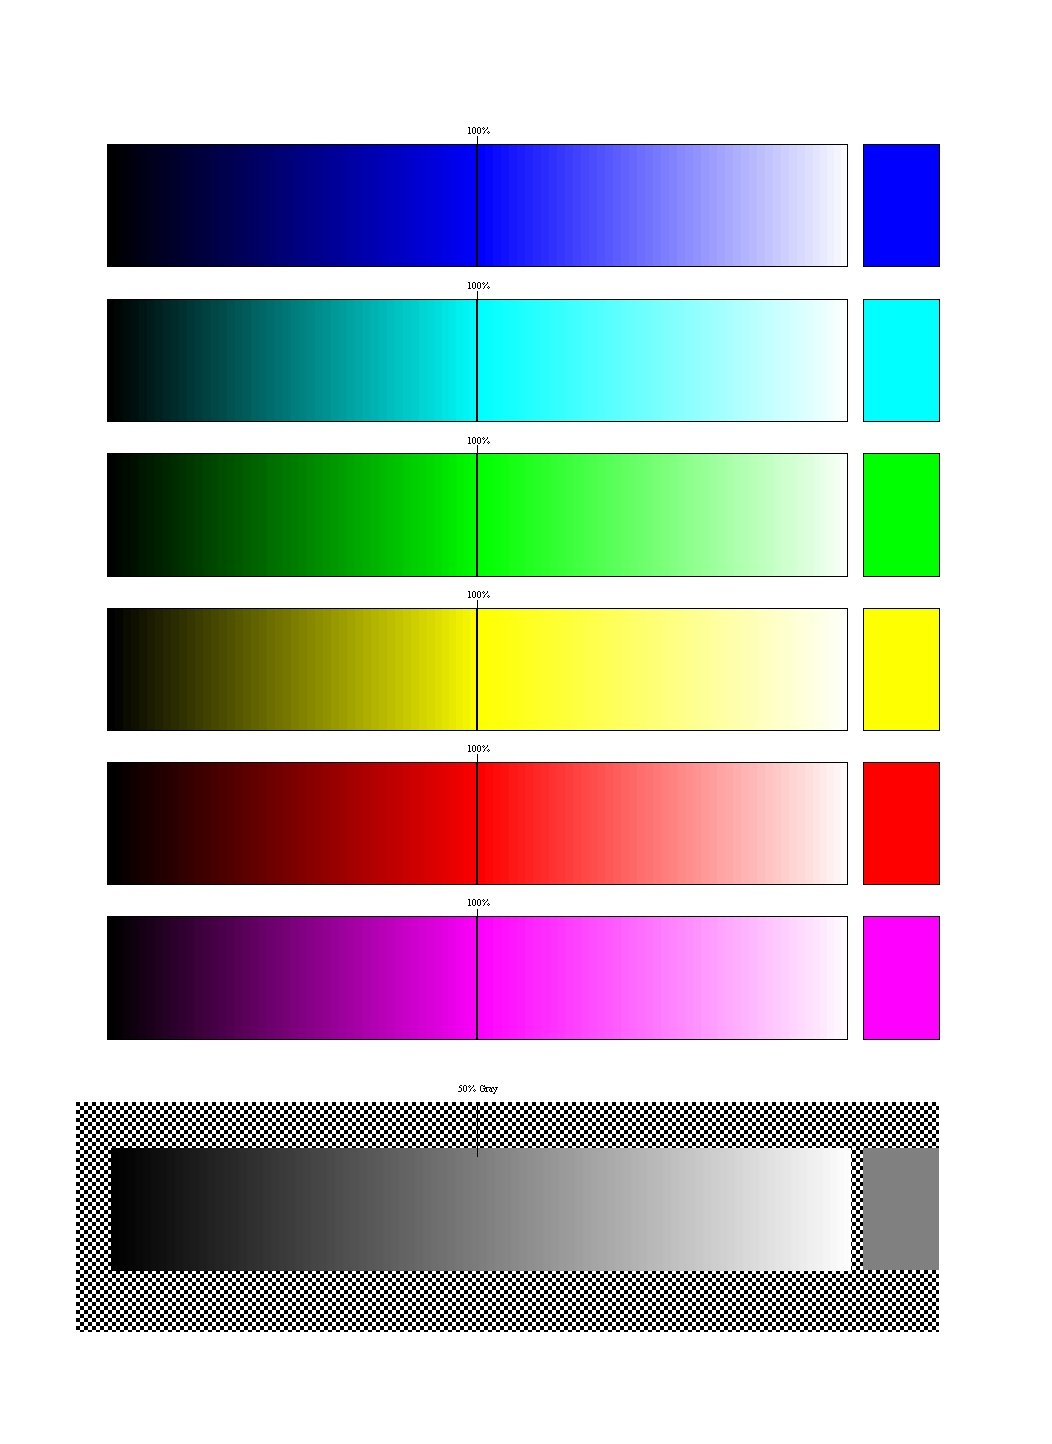 Тест дюз принтера. Тестовый лист для принтера Эпсон l800. Эпсон тест дюз 6 цветов. Тест печати струйного принтера Epson l800. Калибровочная таблица для принтера Эпсон.